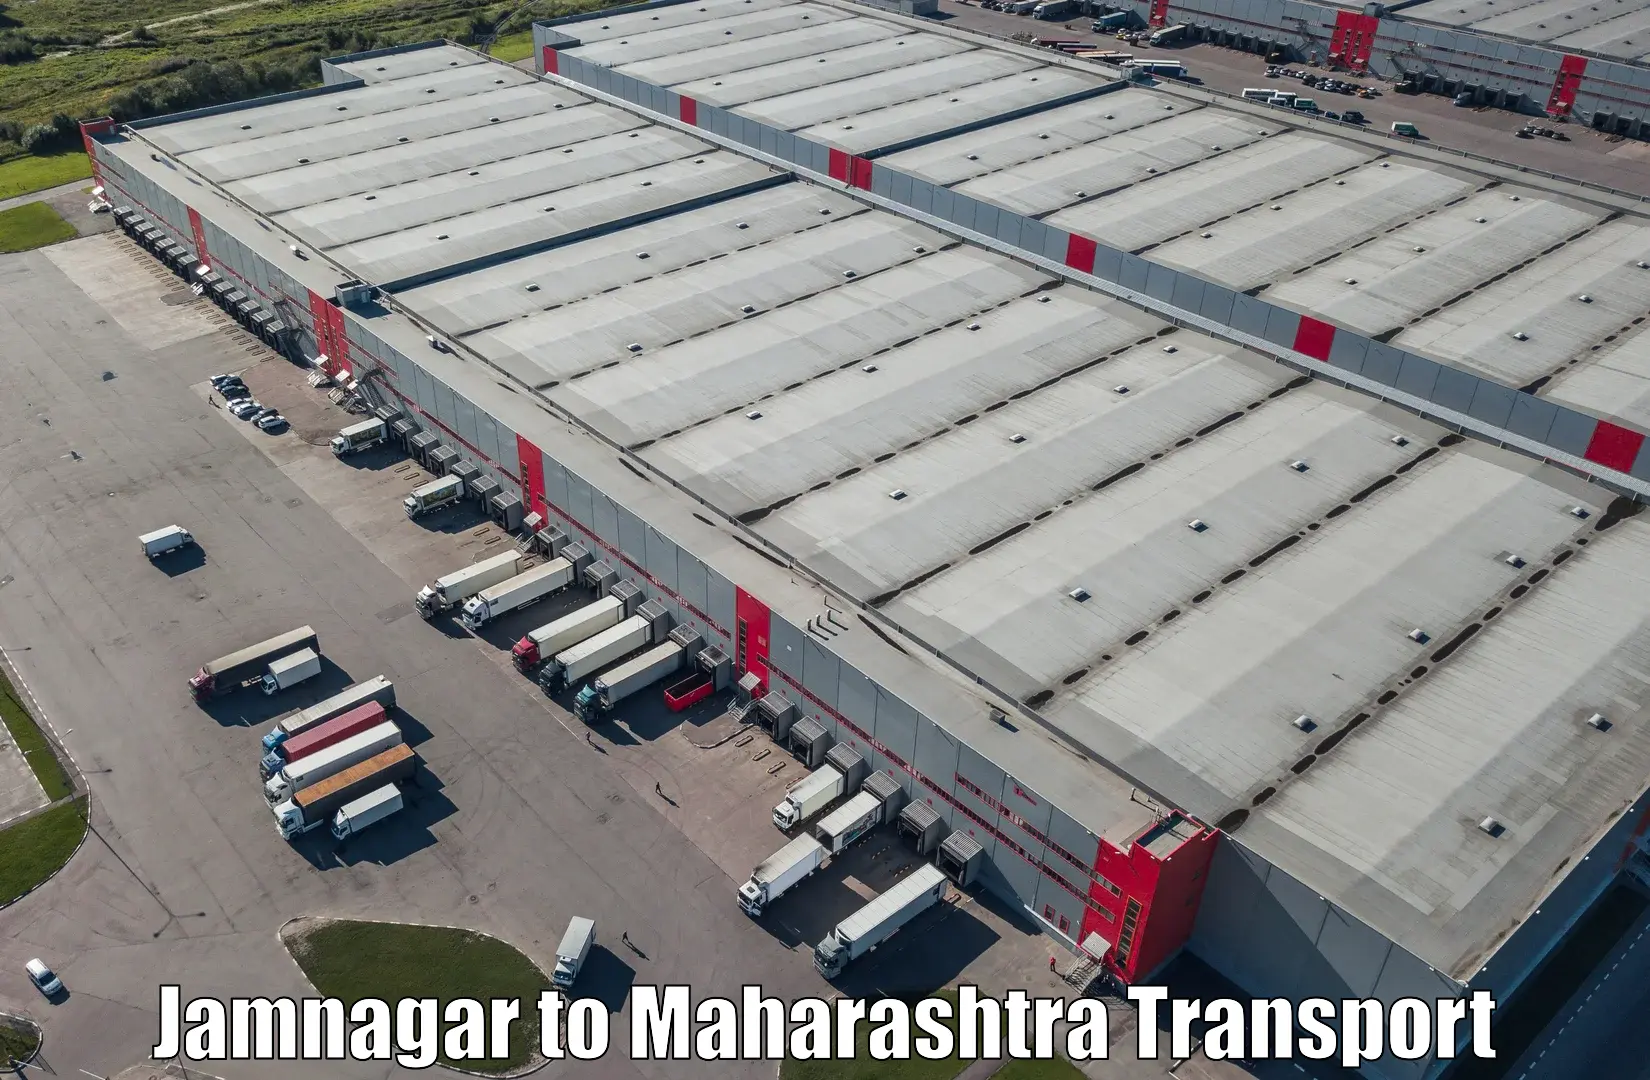 Daily parcel service transport Jamnagar to Walchandnagar